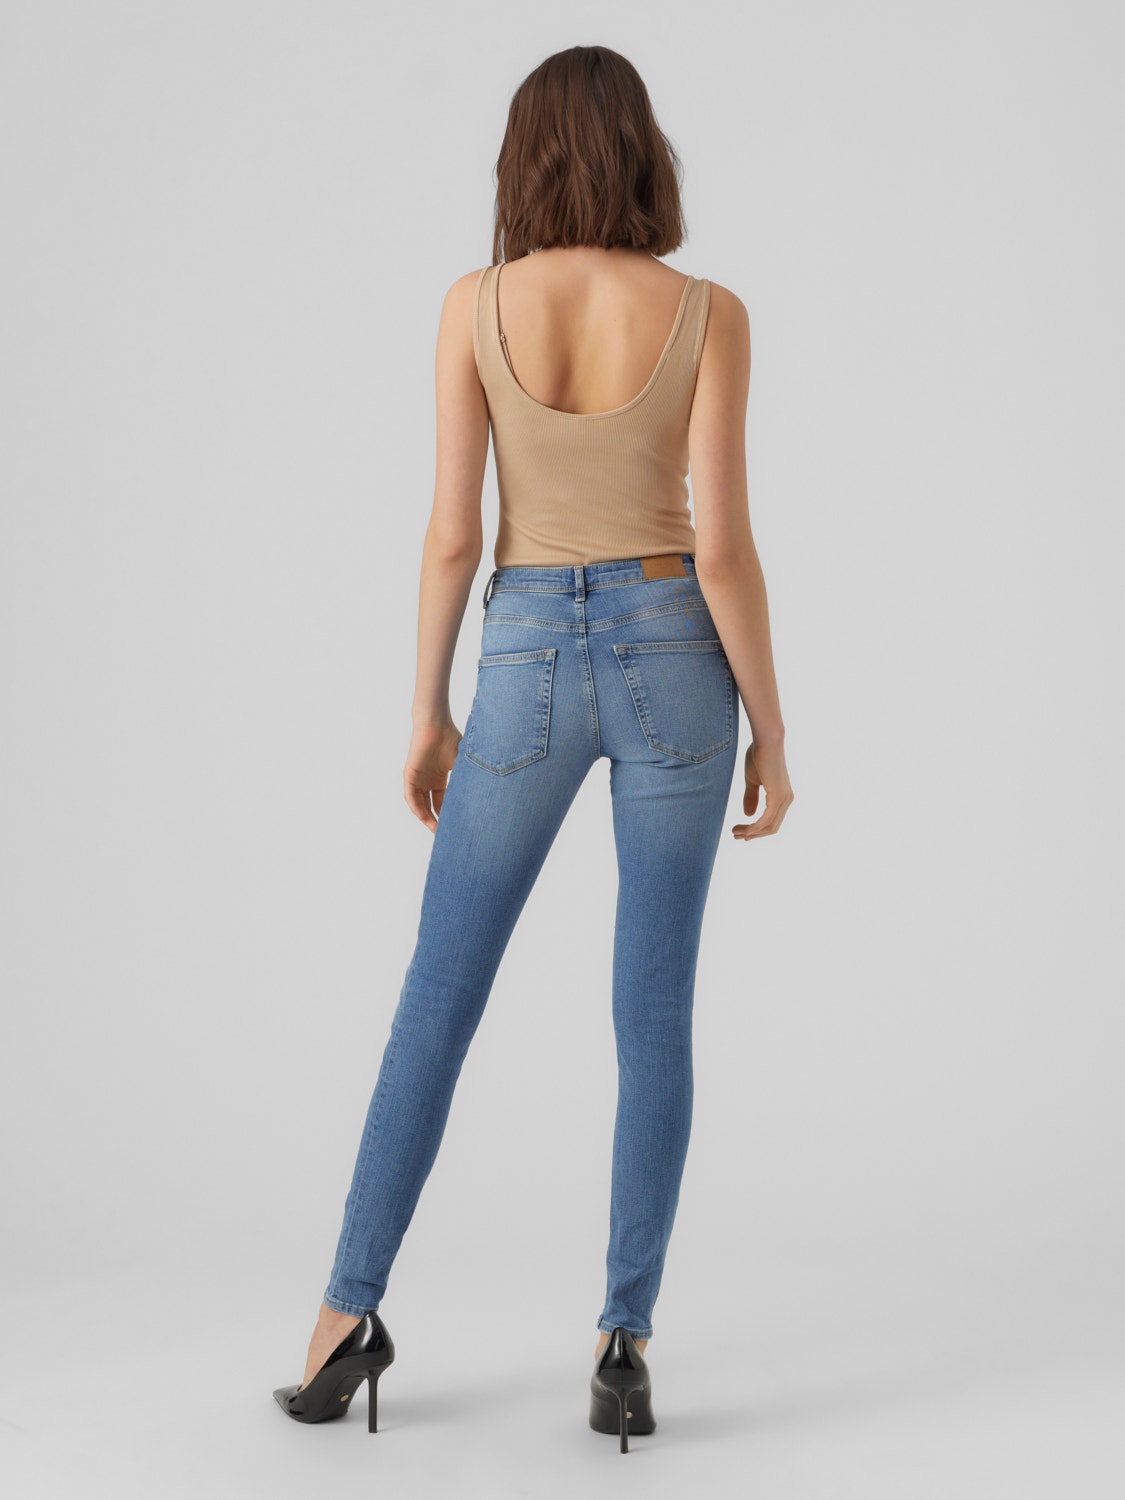 VMSOPHIA Moda® 40% Vero | with Jeans discount!